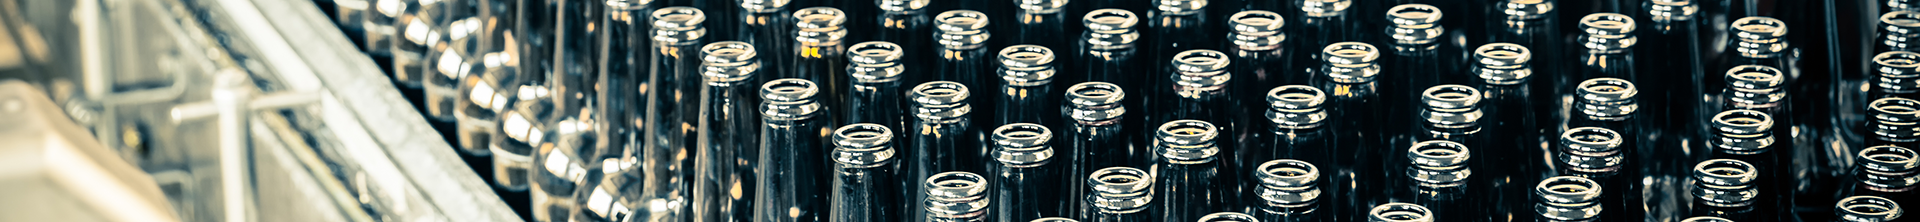 Kundenbericht von August Schell Brewing Company – T12 Testimonial